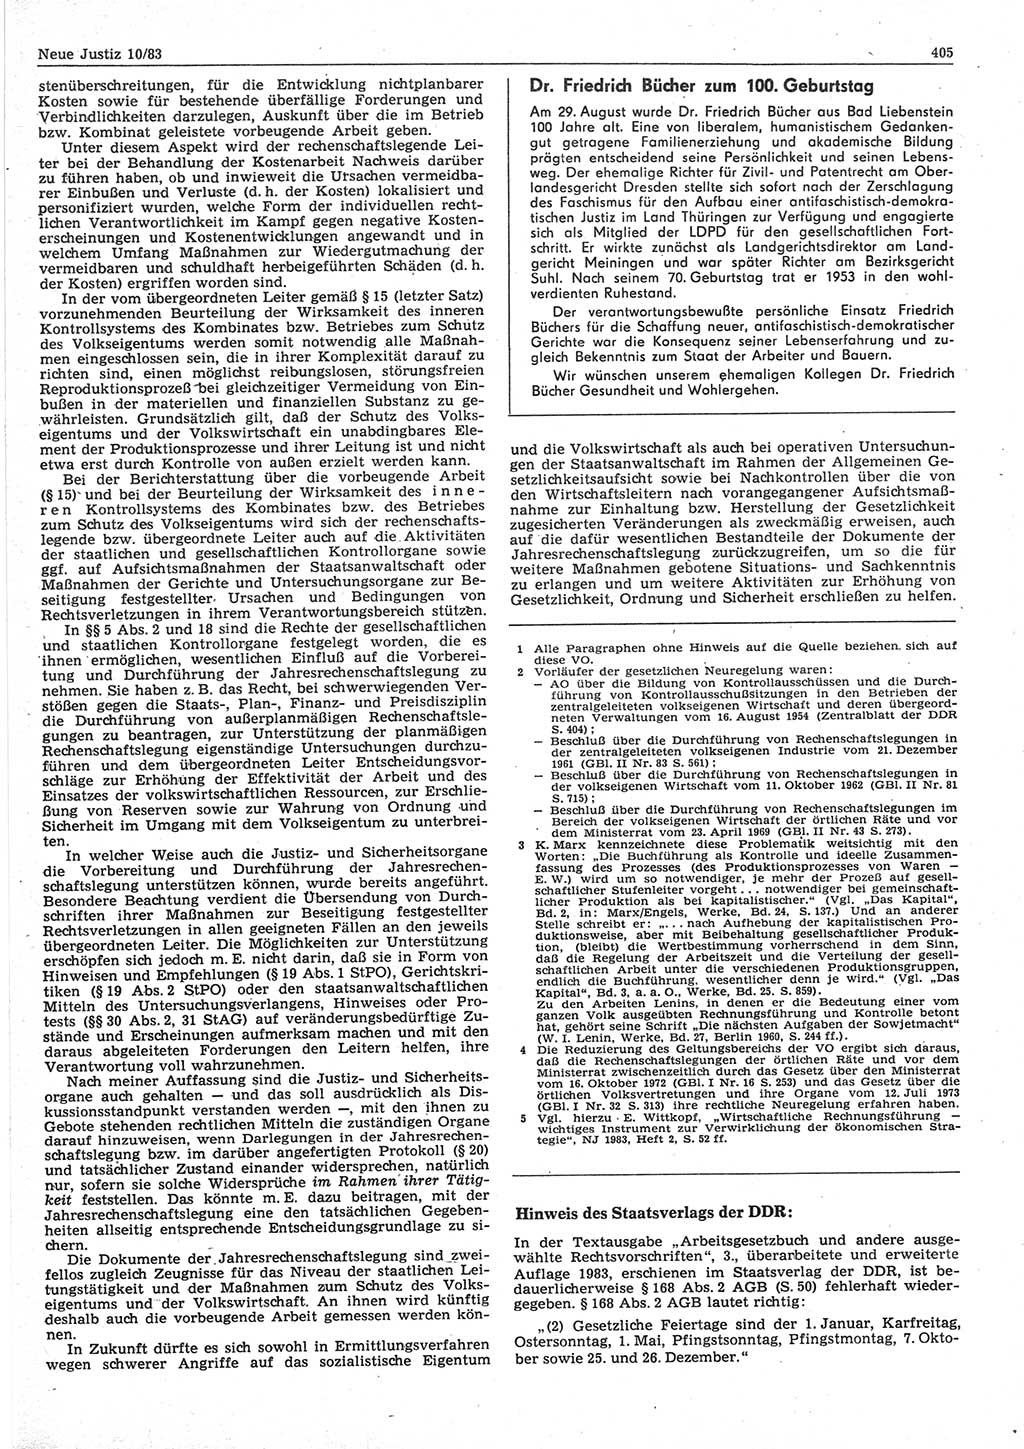 Neue Justiz (NJ), Zeitschrift für sozialistisches Recht und Gesetzlichkeit [Deutsche Demokratische Republik (DDR)], 37. Jahrgang 1983, Seite 405 (NJ DDR 1983, S. 405)